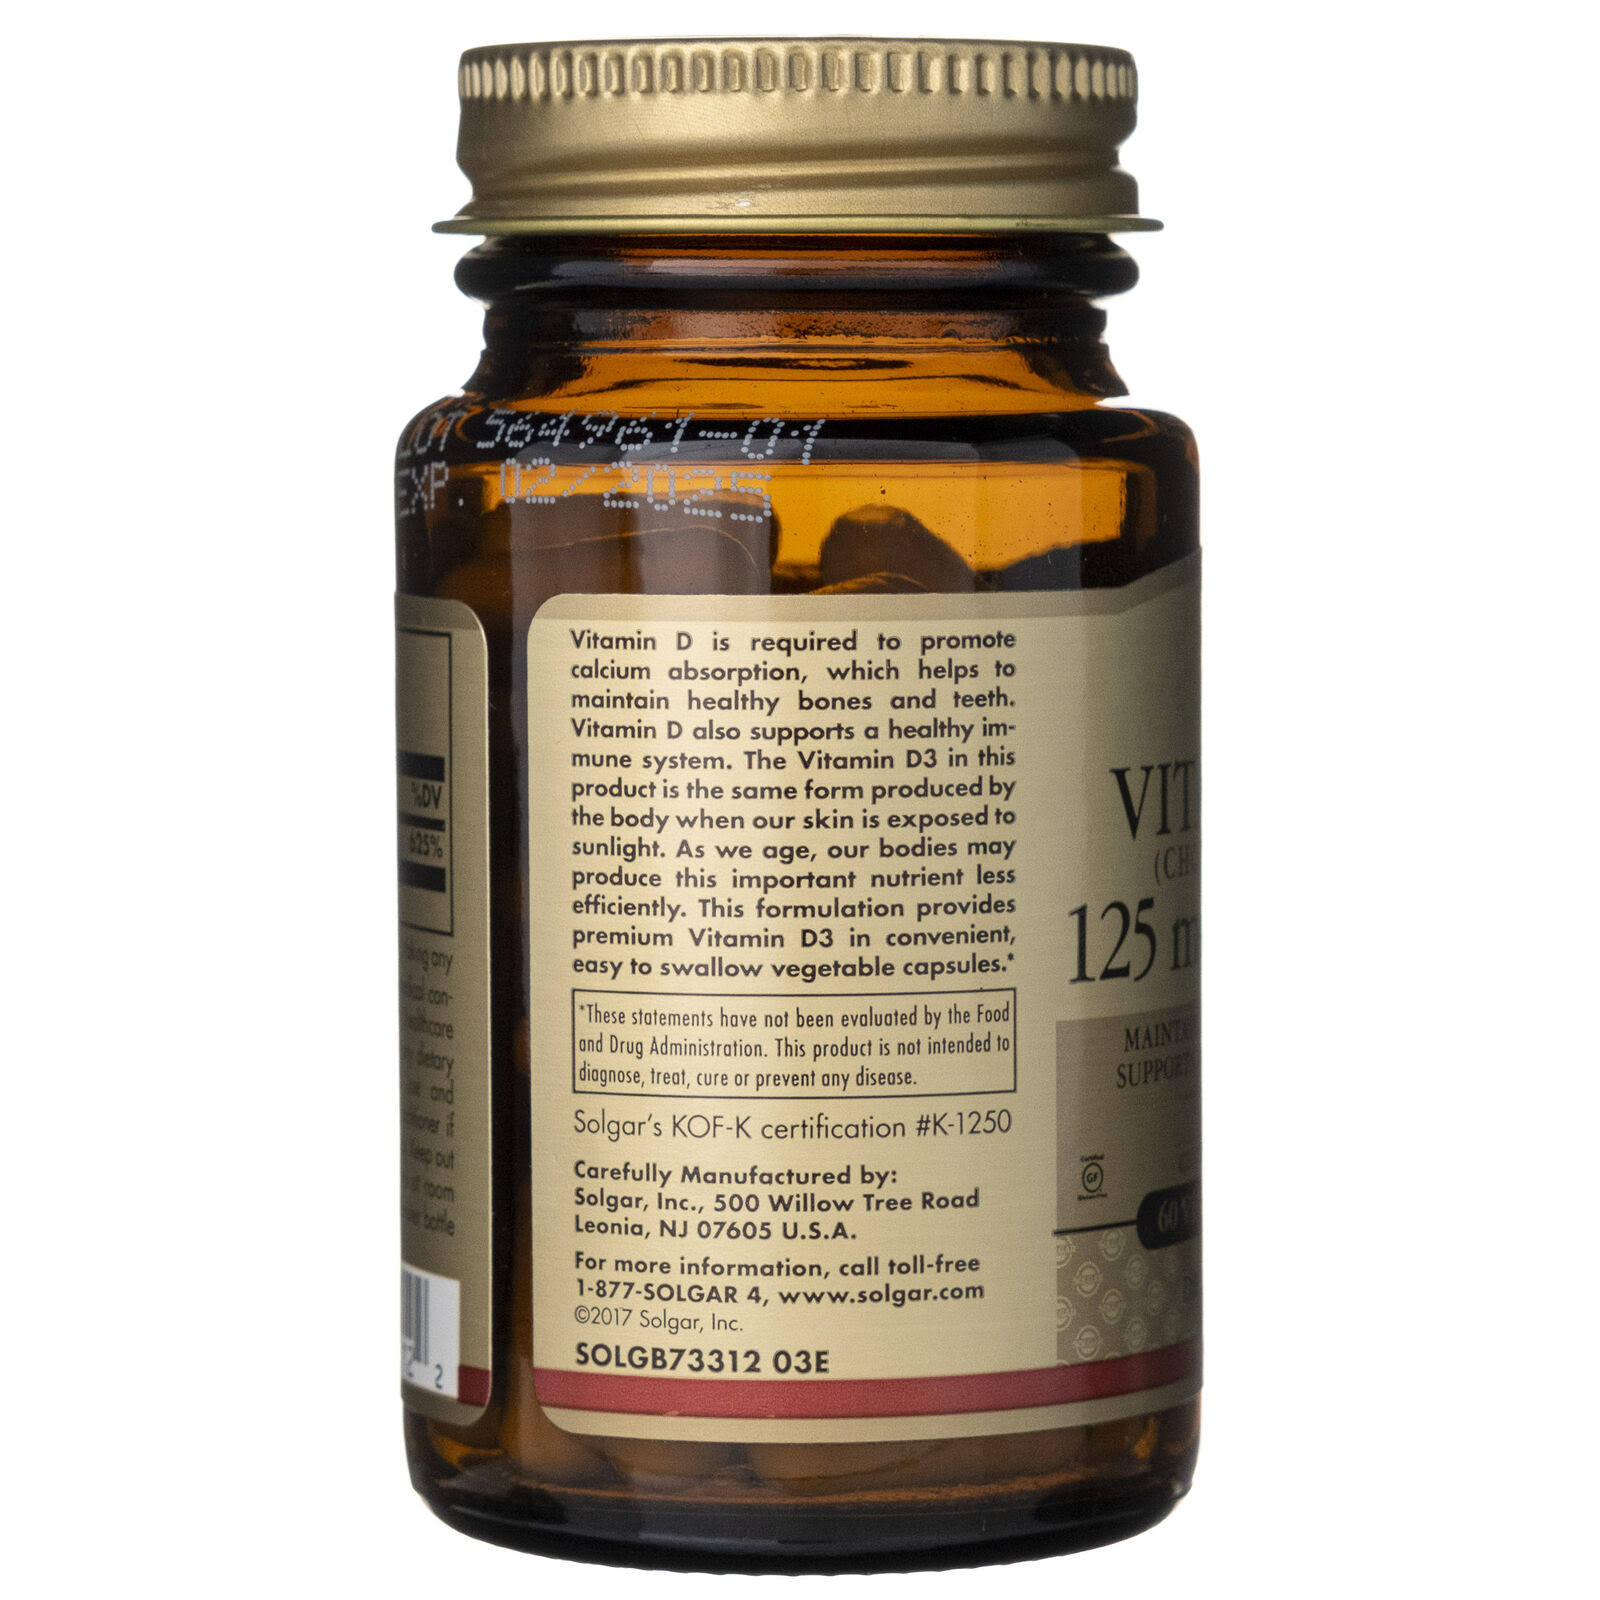 Solgar Vitamin D3 Cholecalciferol 5000 IU Supplement - 60 Capsules